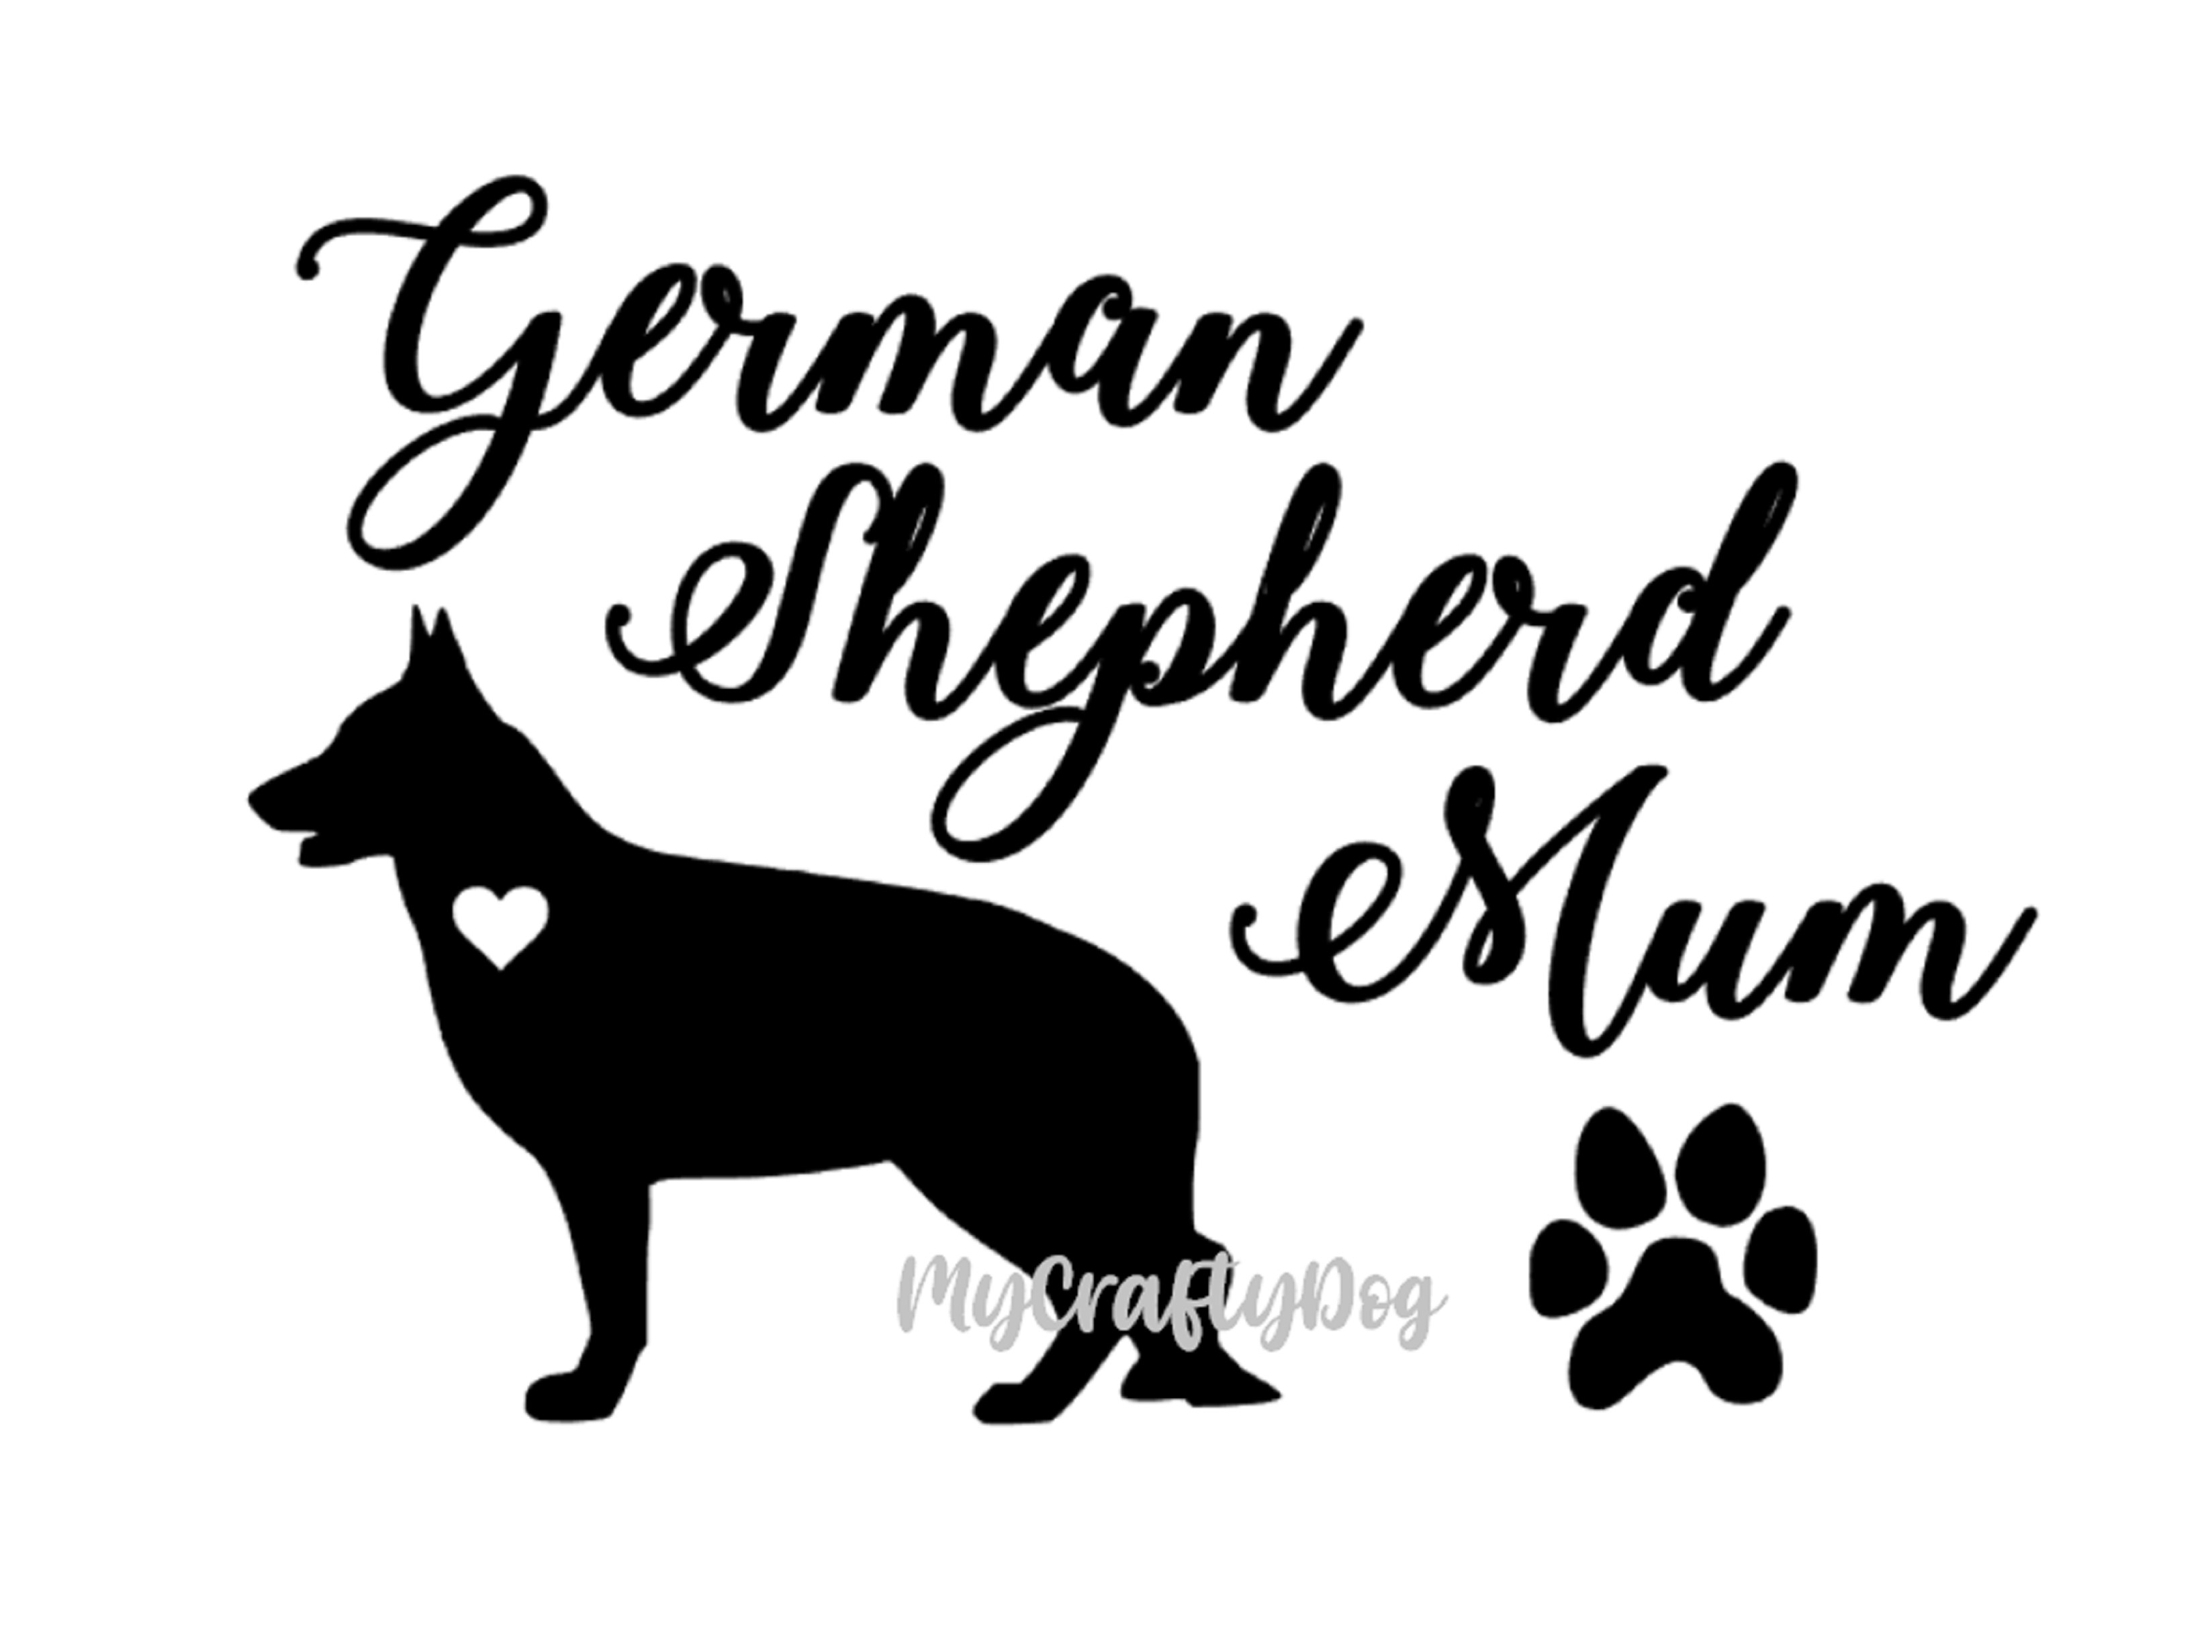 German Shepherd Mum Sticker Car Decal - My Crafty Dog